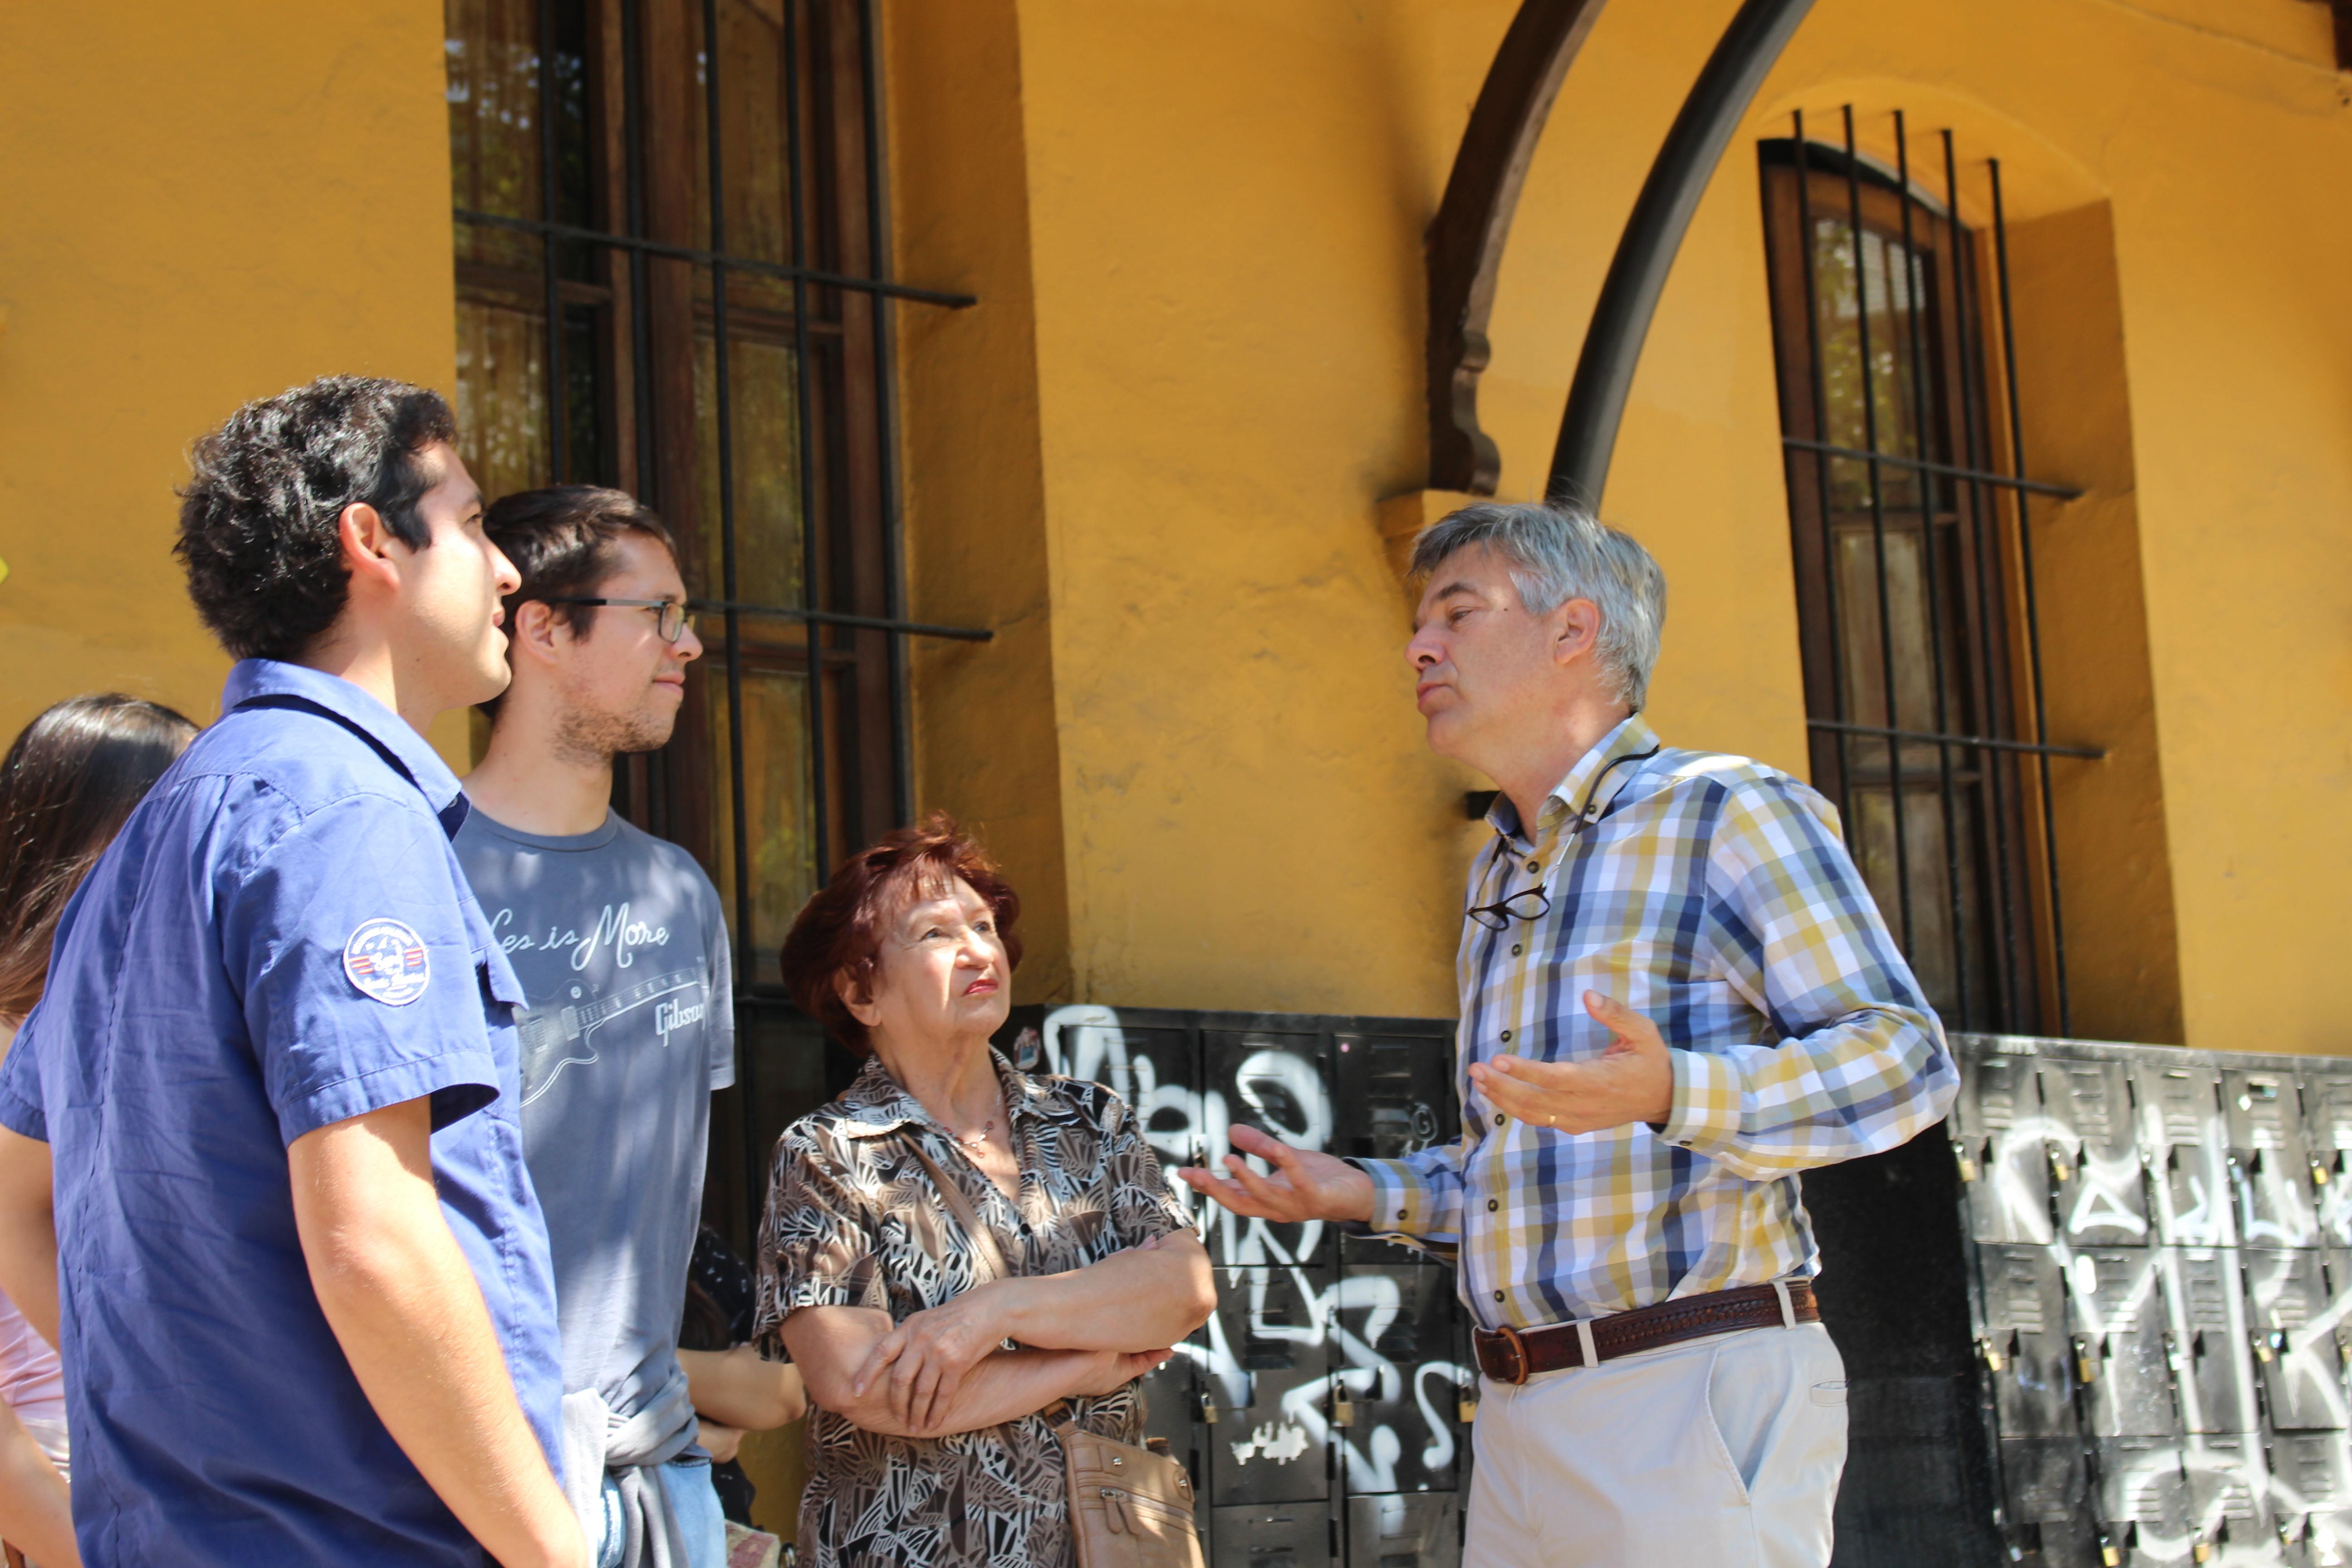 Una vez finalizado el ciclo de charlas, el académico Andrés Weil tomó la iniciativa de guiar a los asistentes en un recorrido por las dependencias de la Facultad.